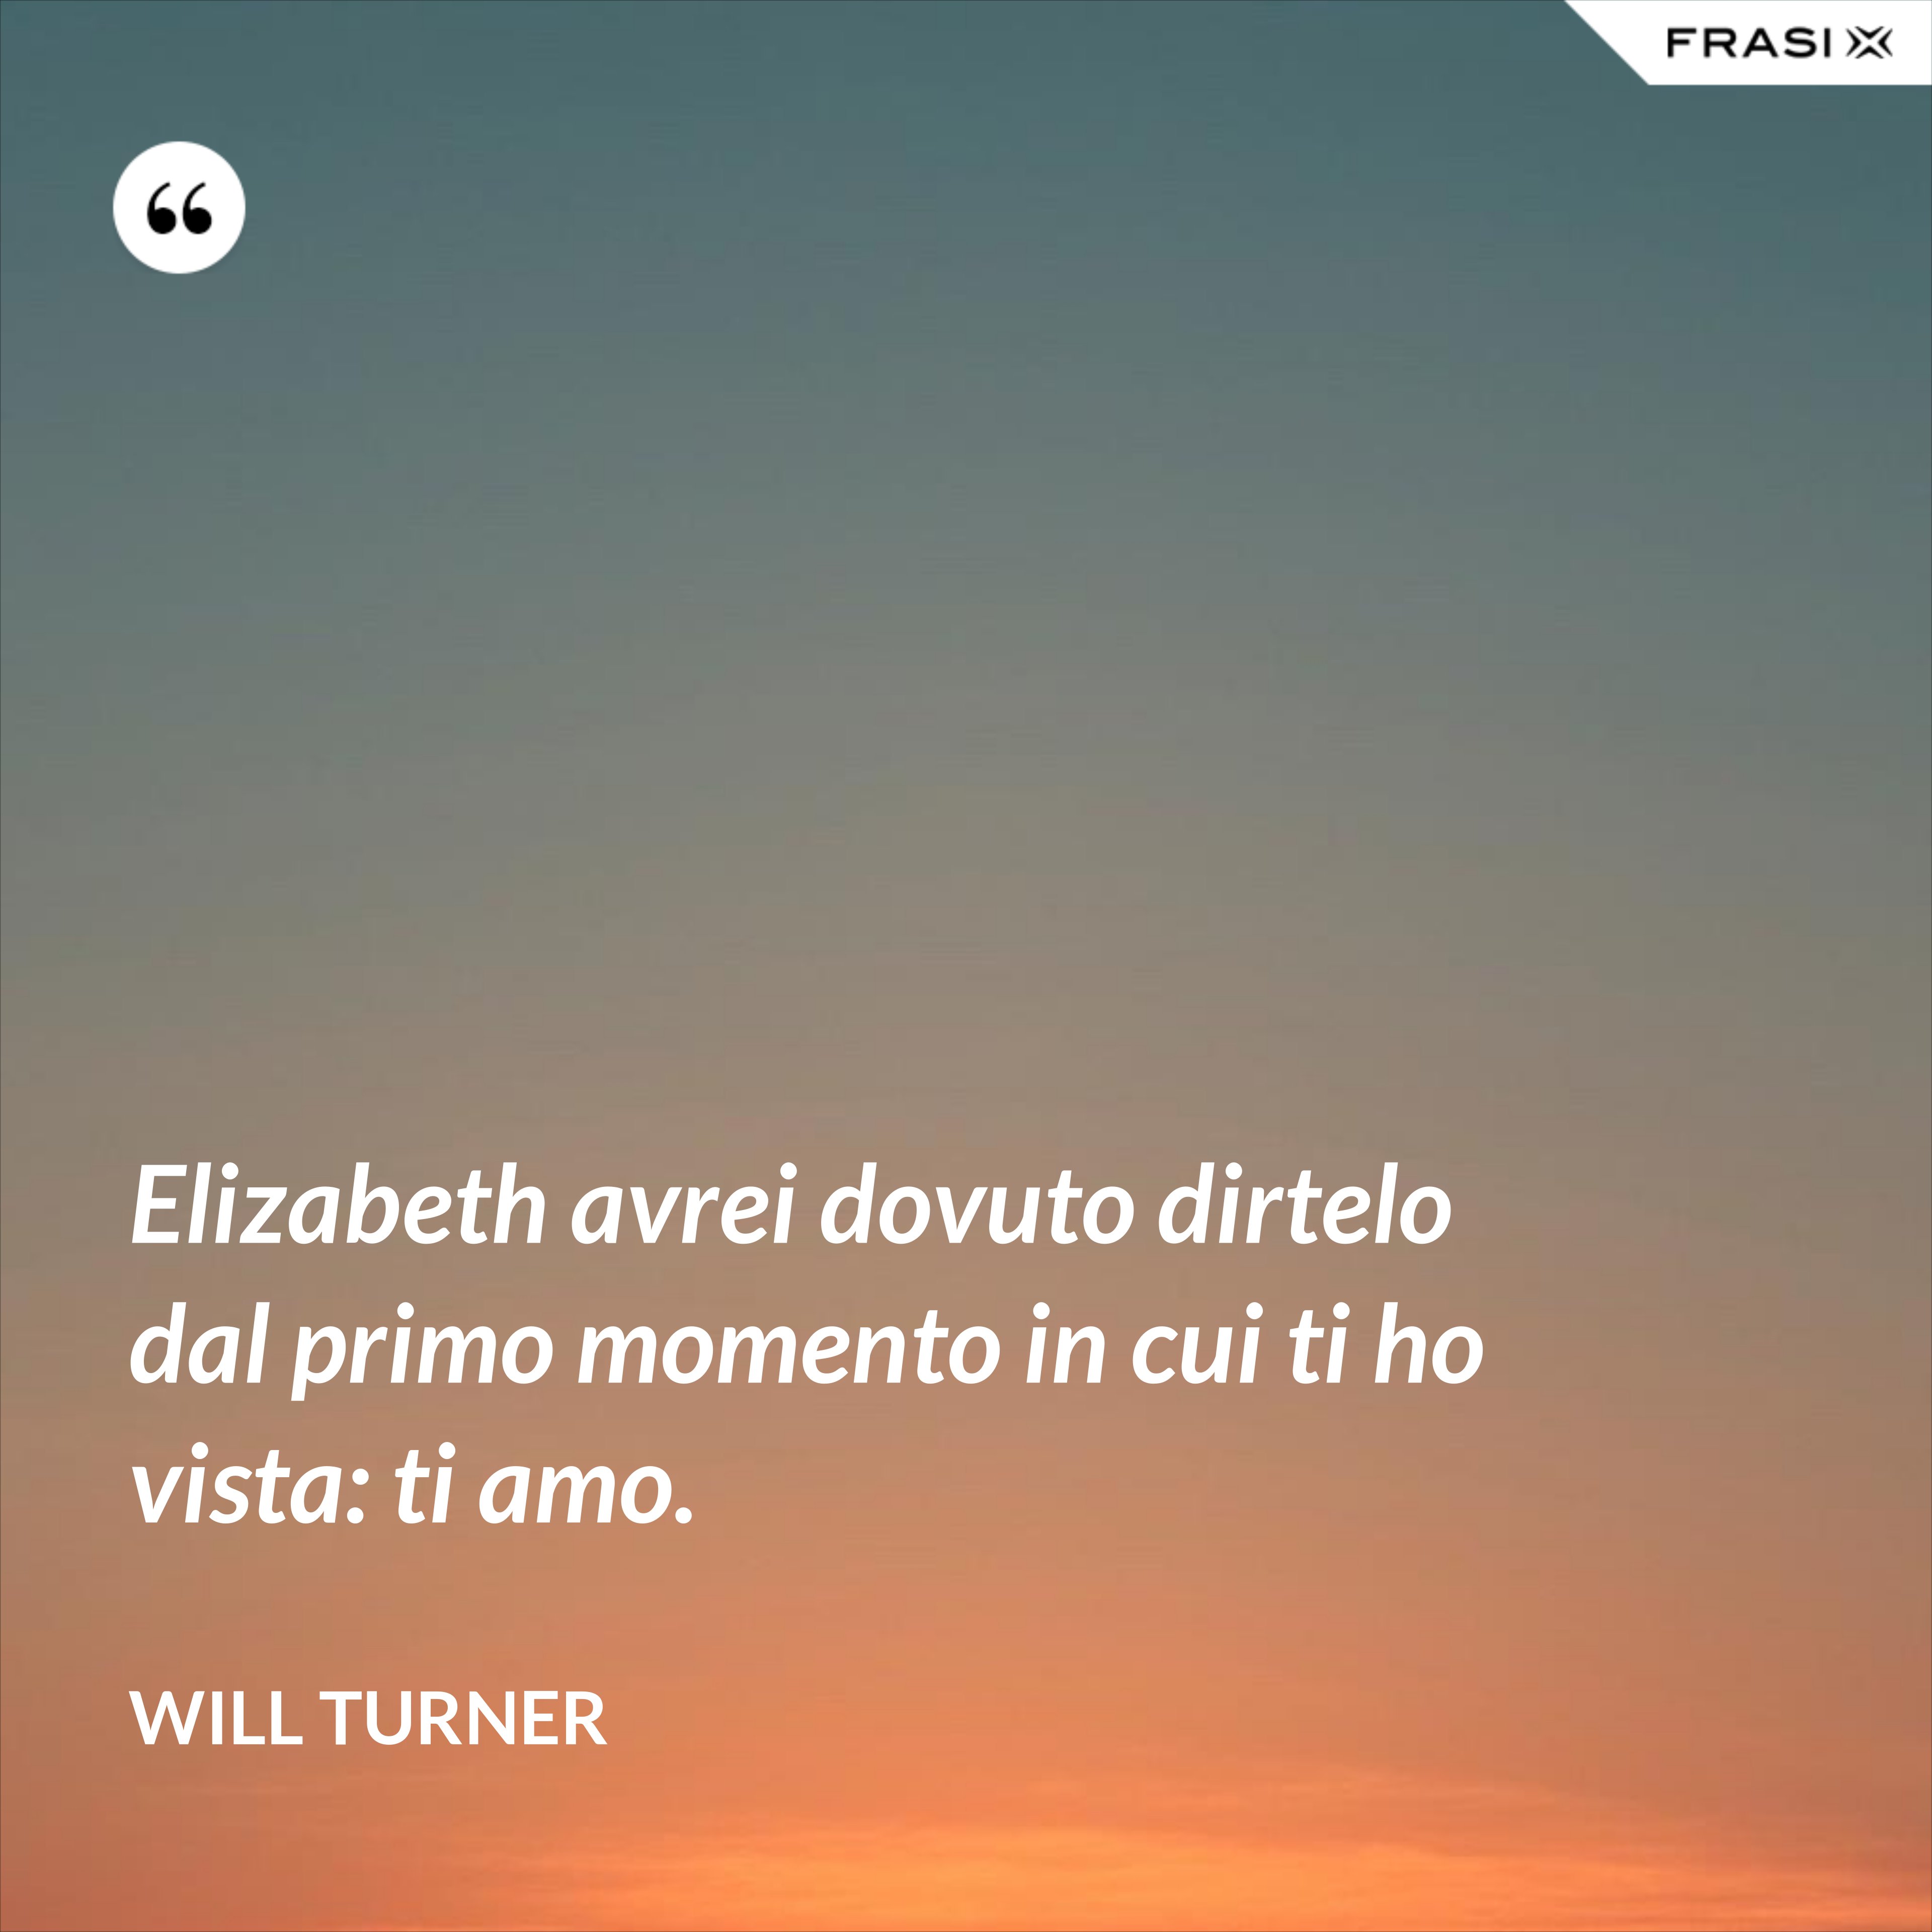 Elizabeth avrei dovuto dirtelo dal primo momento in cui ti ho vista: ti amo. - Will Turner